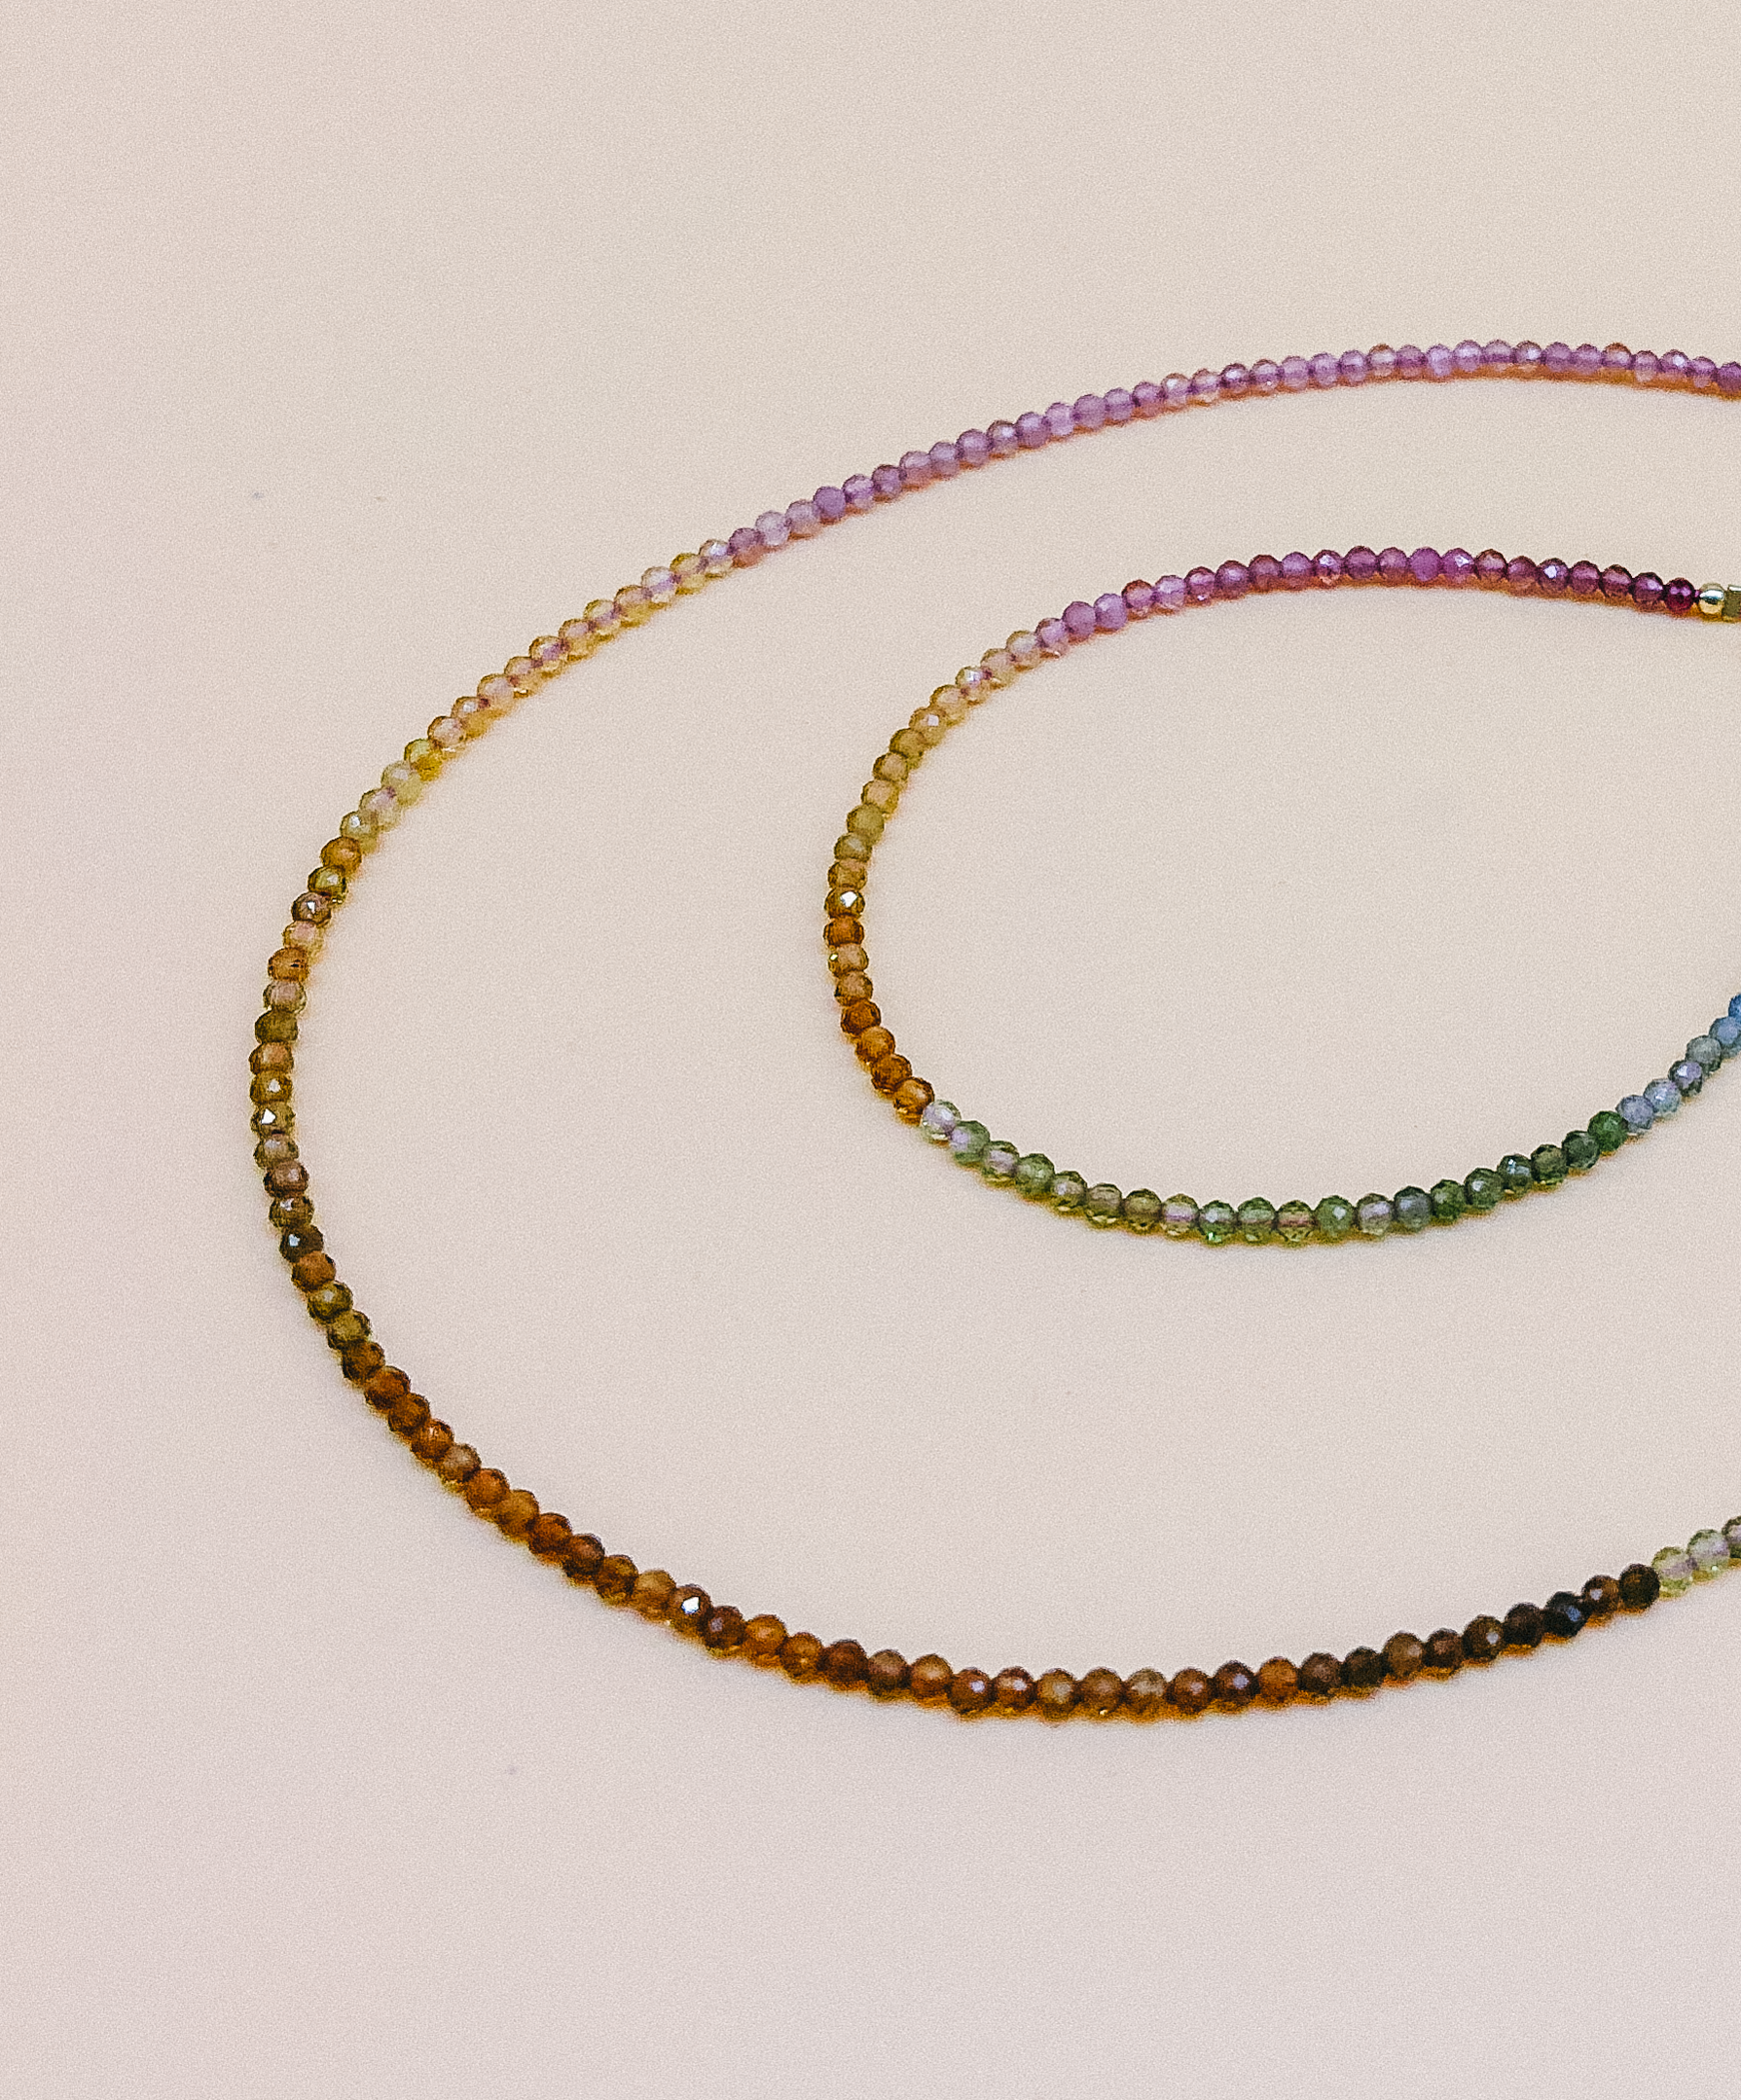 Rainbow Quartz Jewelry Set by Veronique